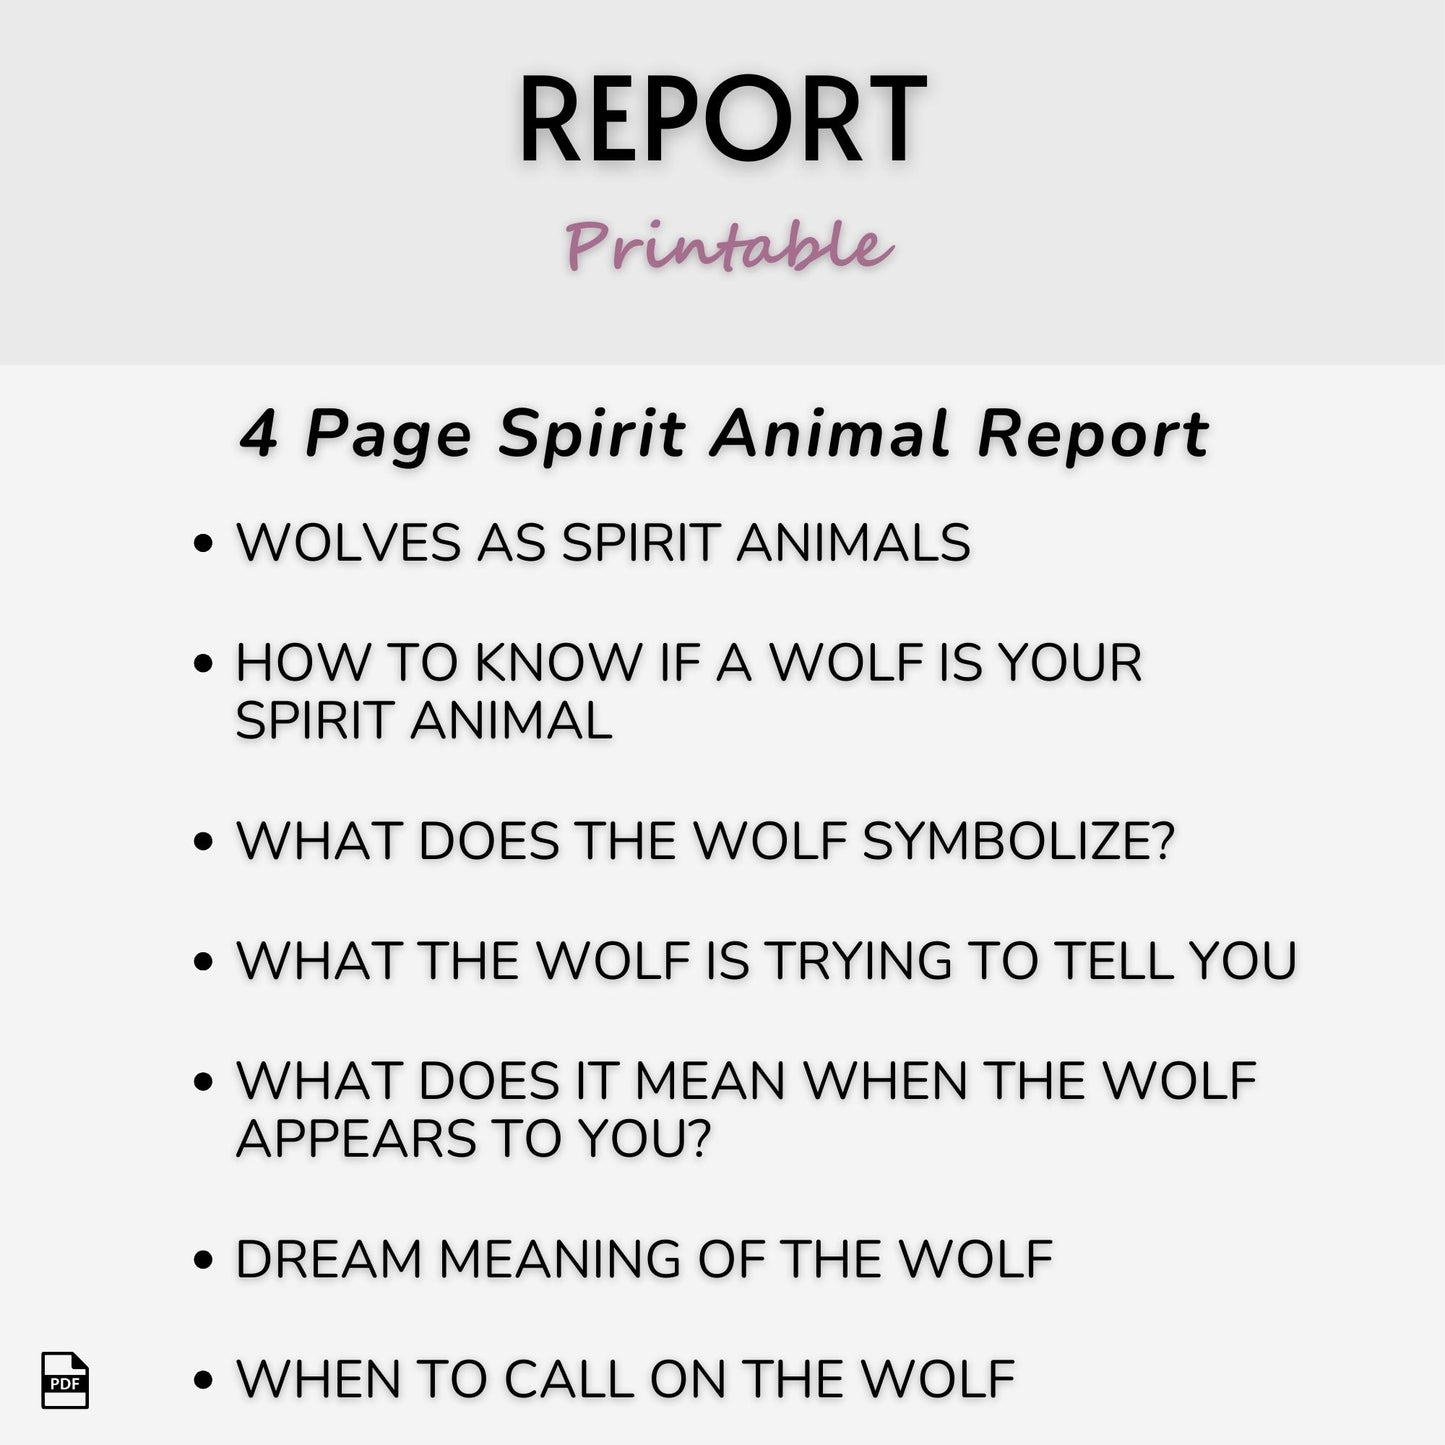 Wolf Spirit Animal Journal